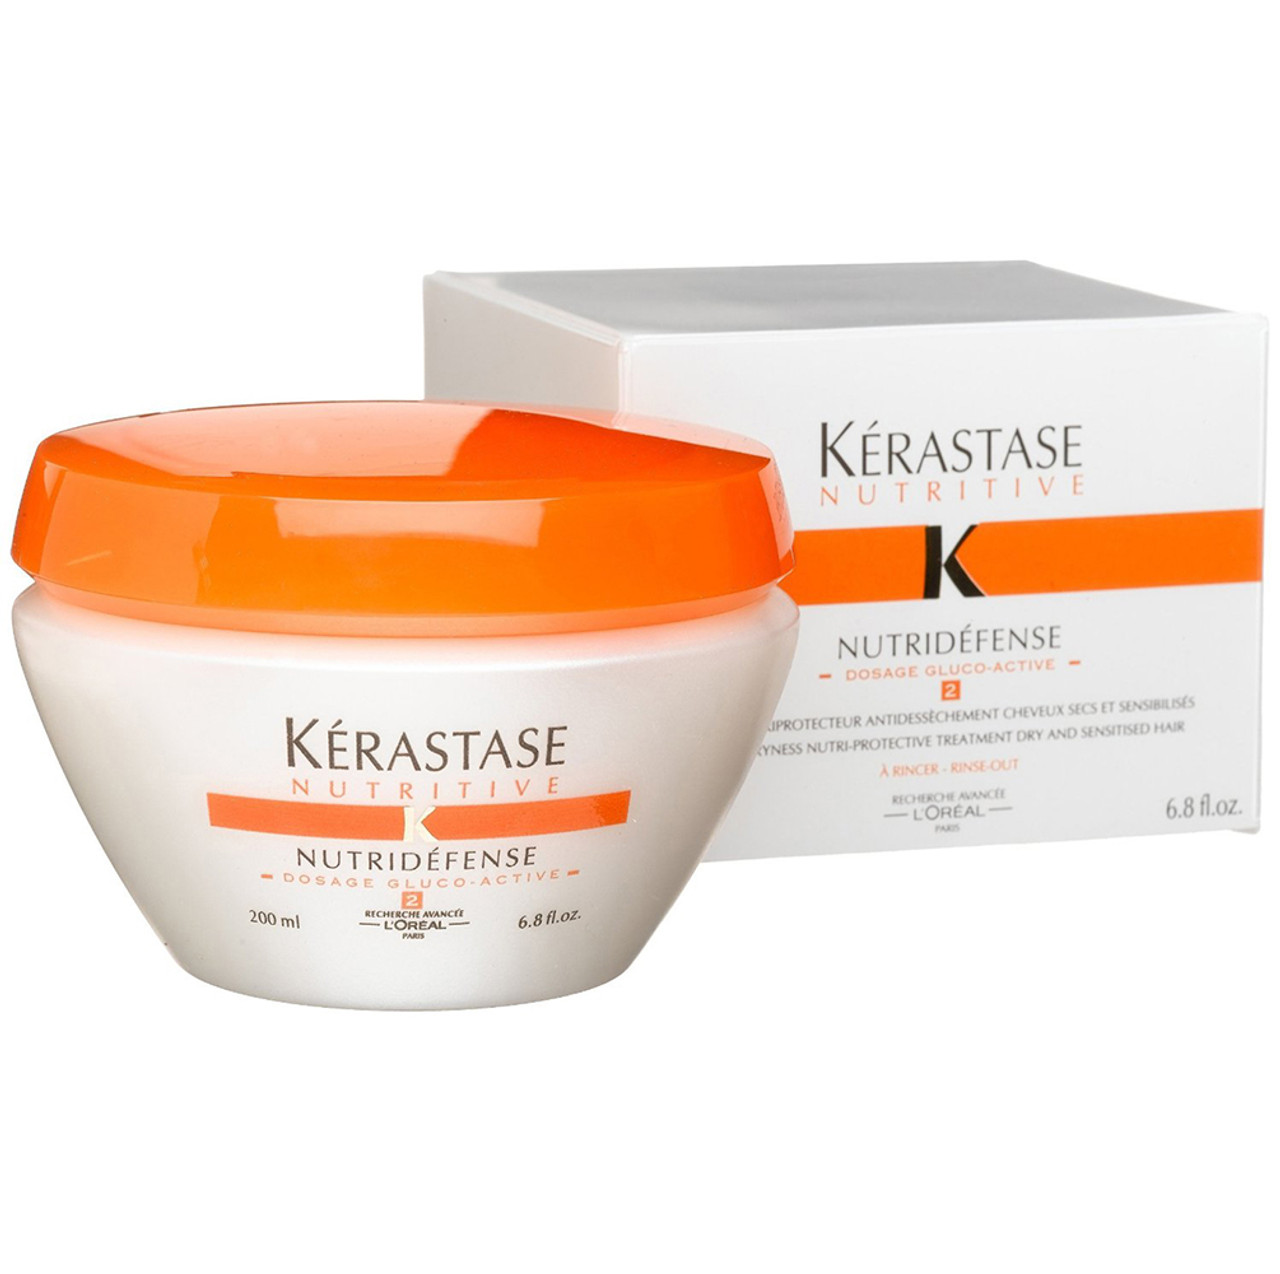 Forsømme væv Punktlighed Kerastase Nutritive Nutridefense 2 Treatment for Dry and Sensitized Hair  SleekShop.com